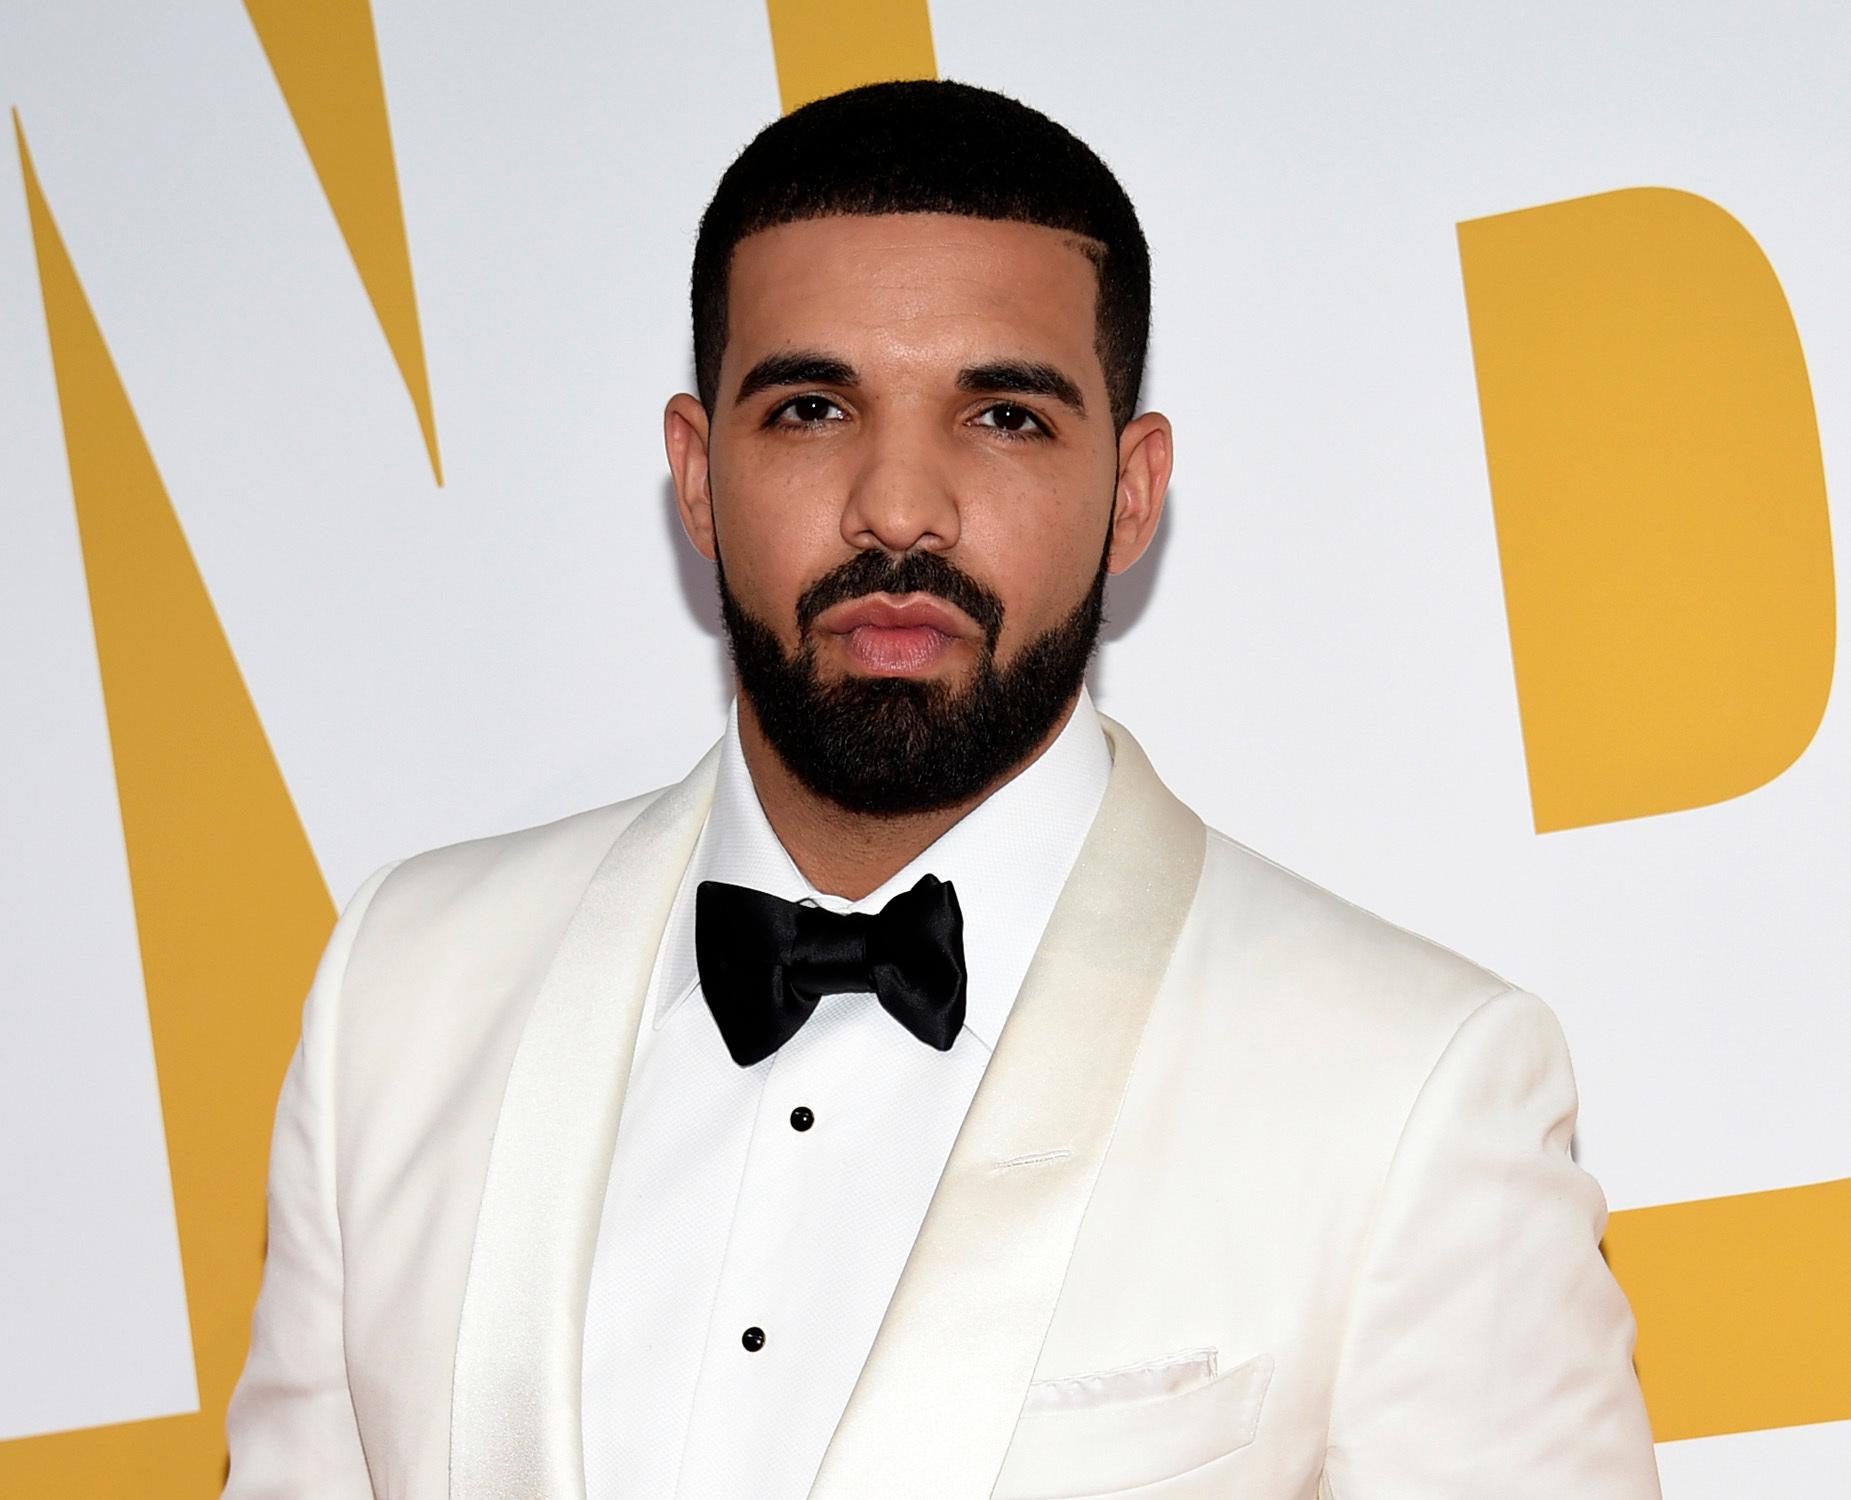 Kanadensiske Drake poserar på en bild tillsammans med Kanye West, som numera kallar sig Ye. Arkivbild.